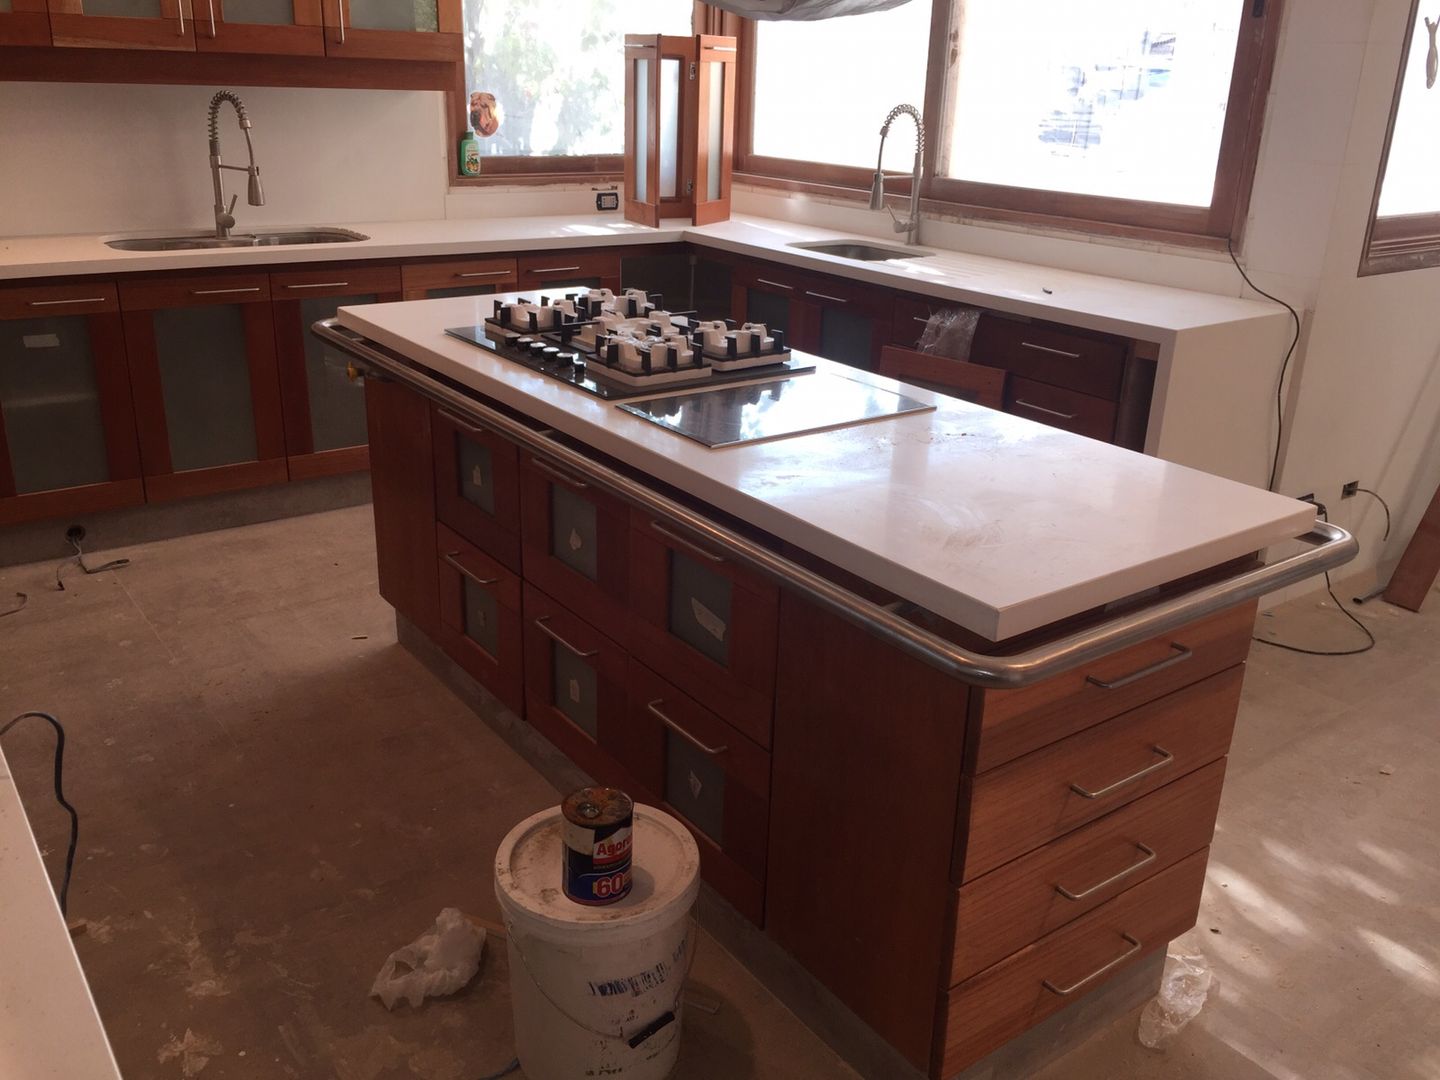 Remodelación de cocina; Cubierta en Cuarzo Beige; Muebles en Lamitech combinados con Vidrio., MueblesIVS MueblesIVS Kitchen Wood Wood effect Bench tops